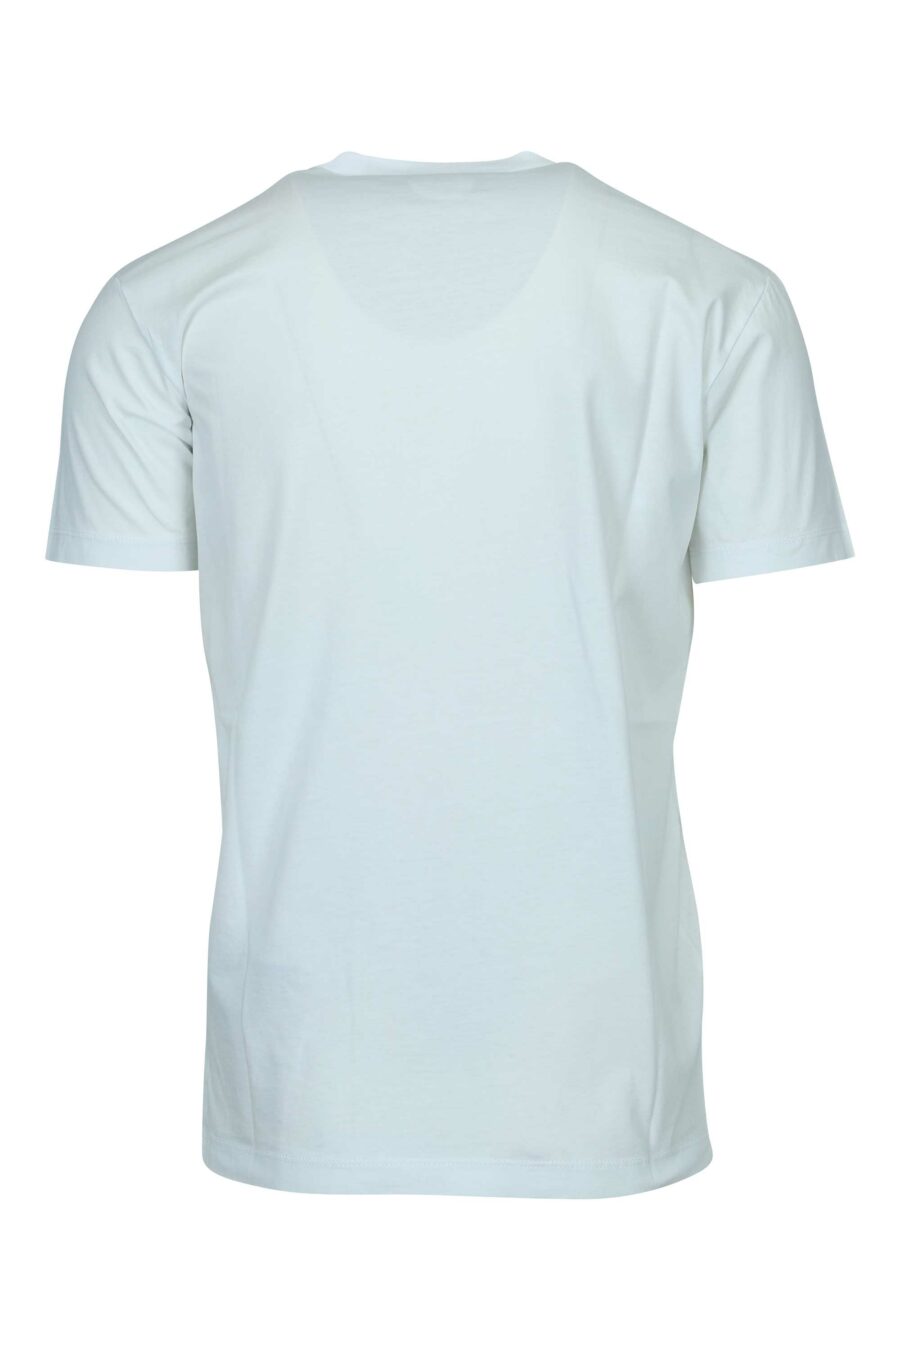 T-shirt blanc avec maxilogo rétro multicolore - 8054148447434 1 2